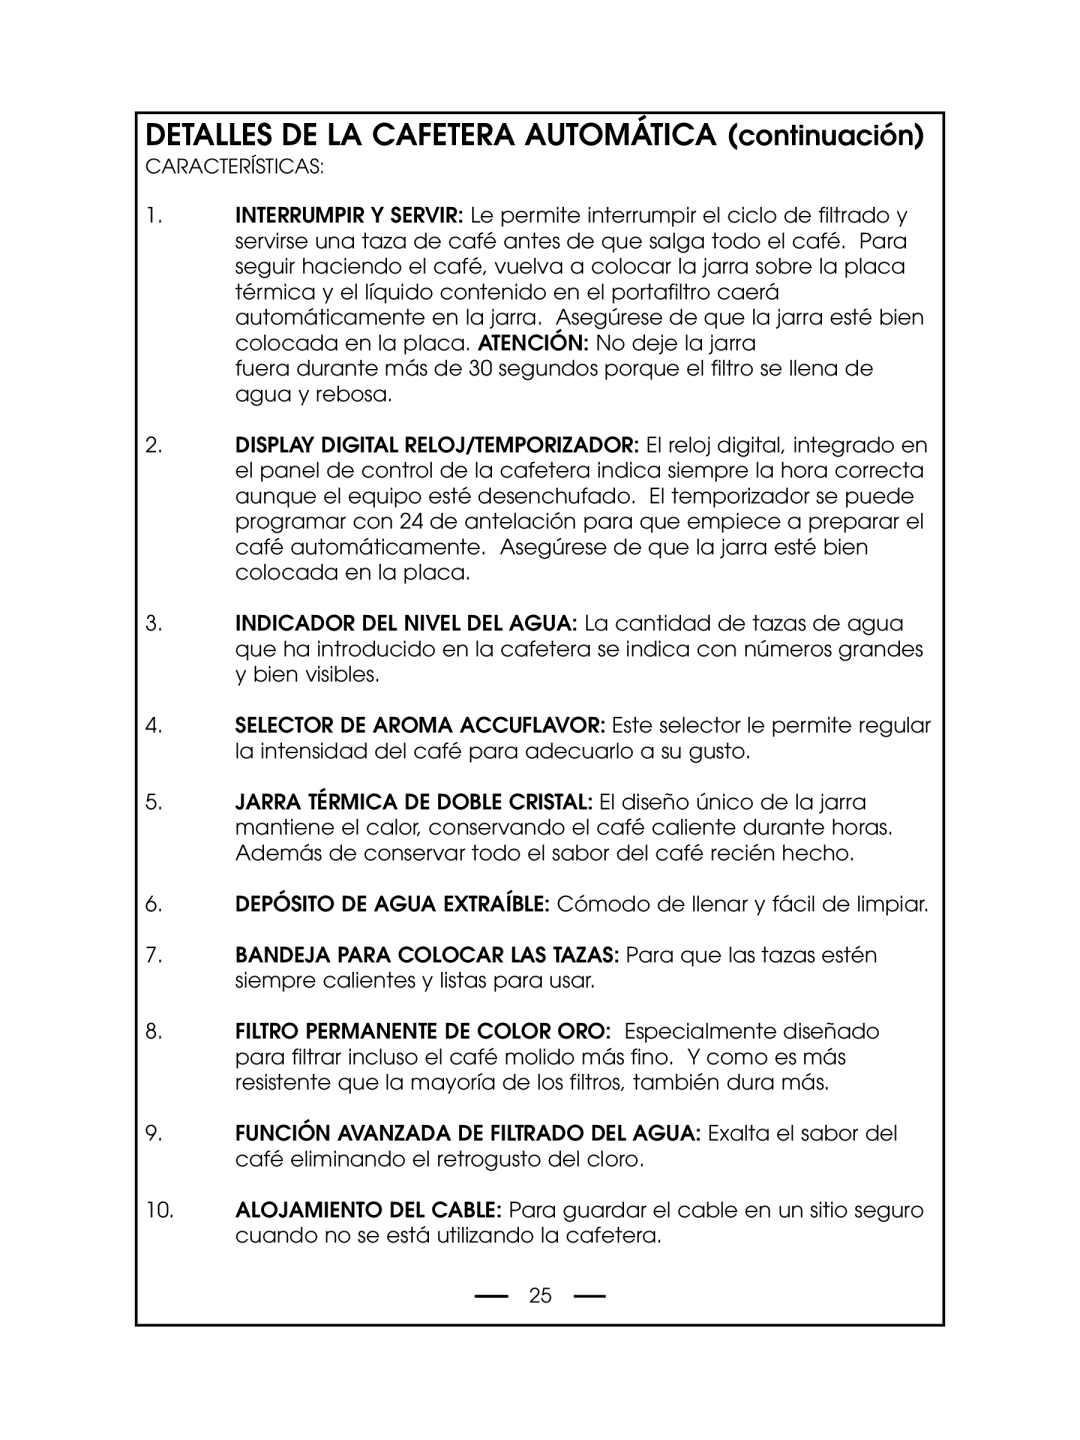 DeLonghi DCM485 instruction manual DETALLES DE LA CAFETERA AUTOMÁTICA continuación 